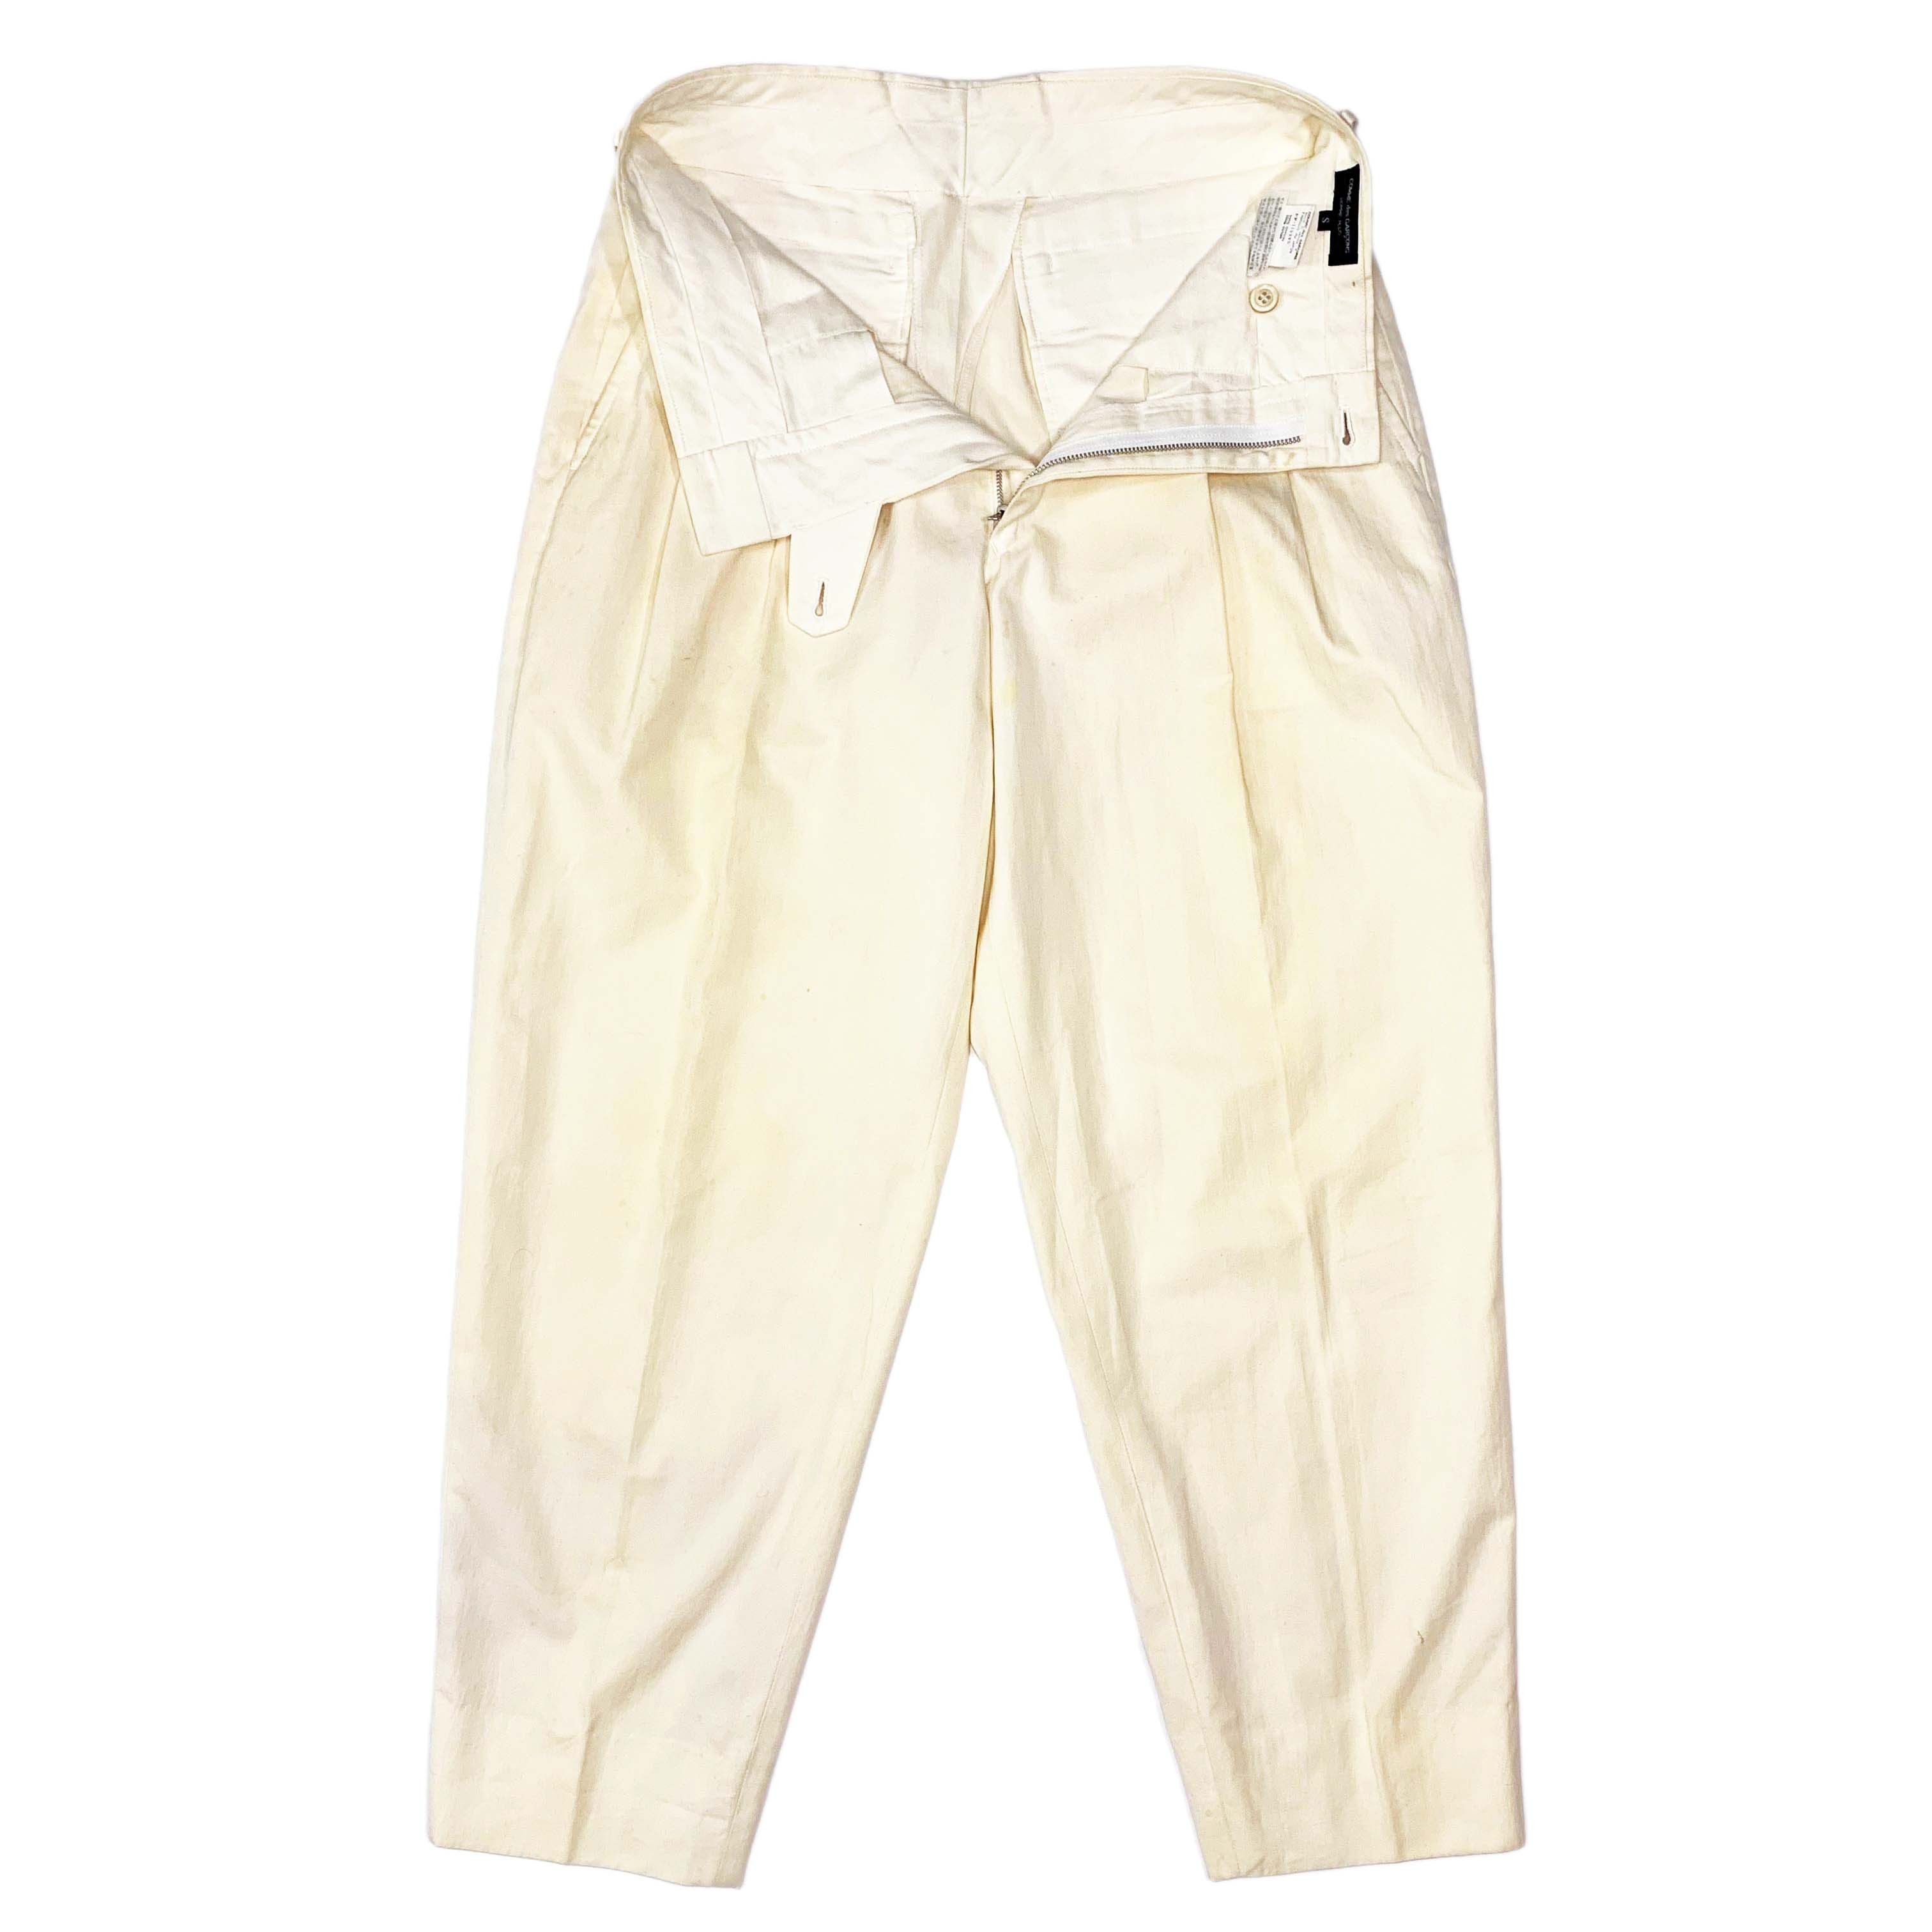 SS87 Short Acetate Jacket & Cotton Pants - 10